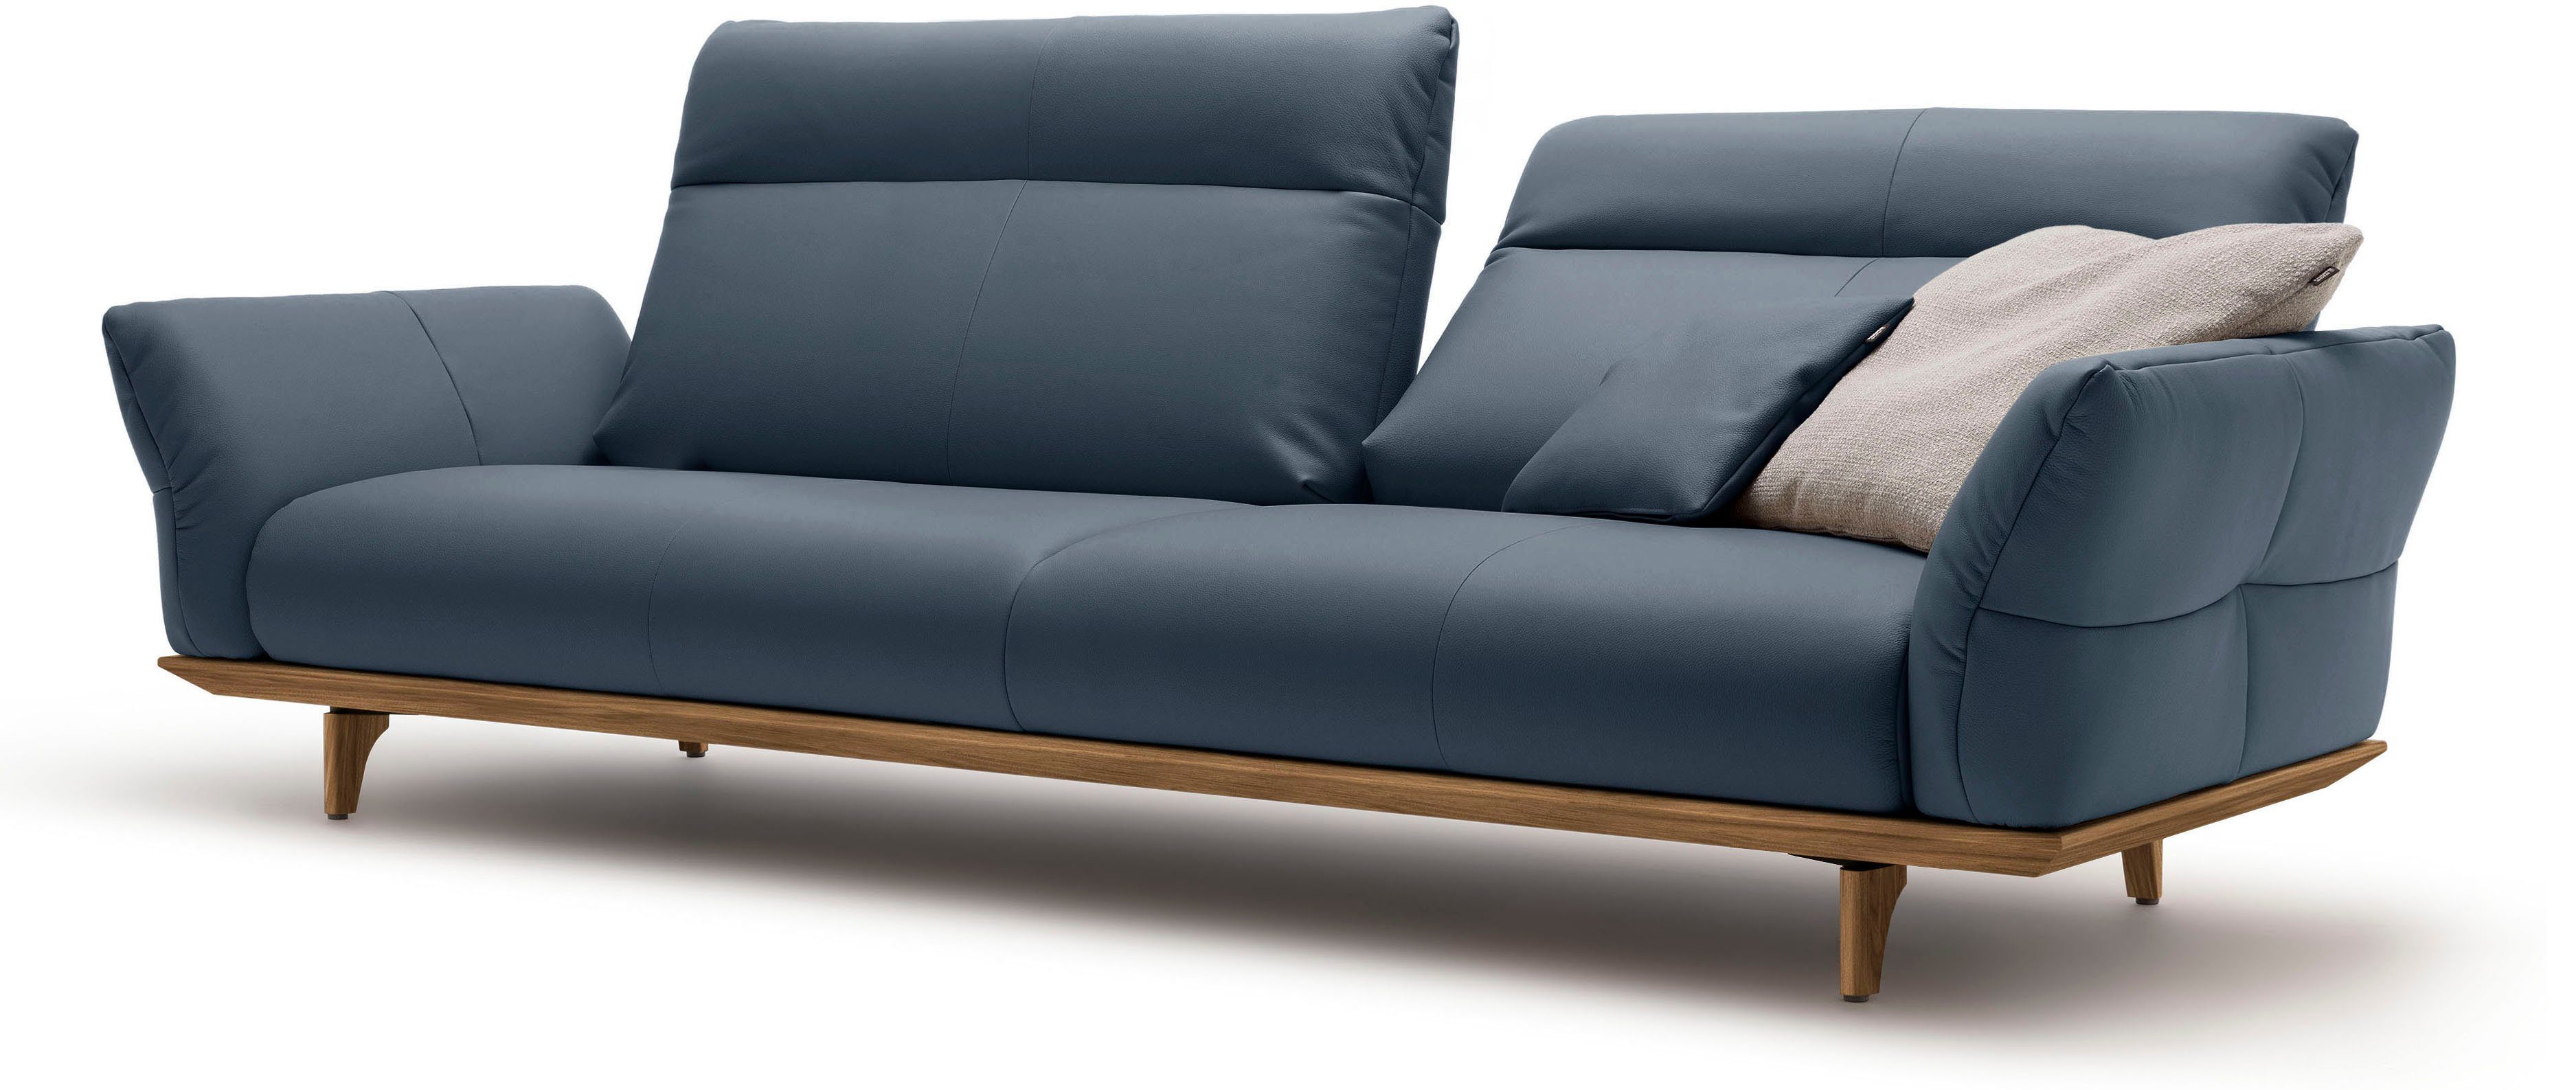 hülsta sofa 4-Sitzer hs.460, 248 cm Sockel Nussbaum, in Nussbaum, Breite Füße